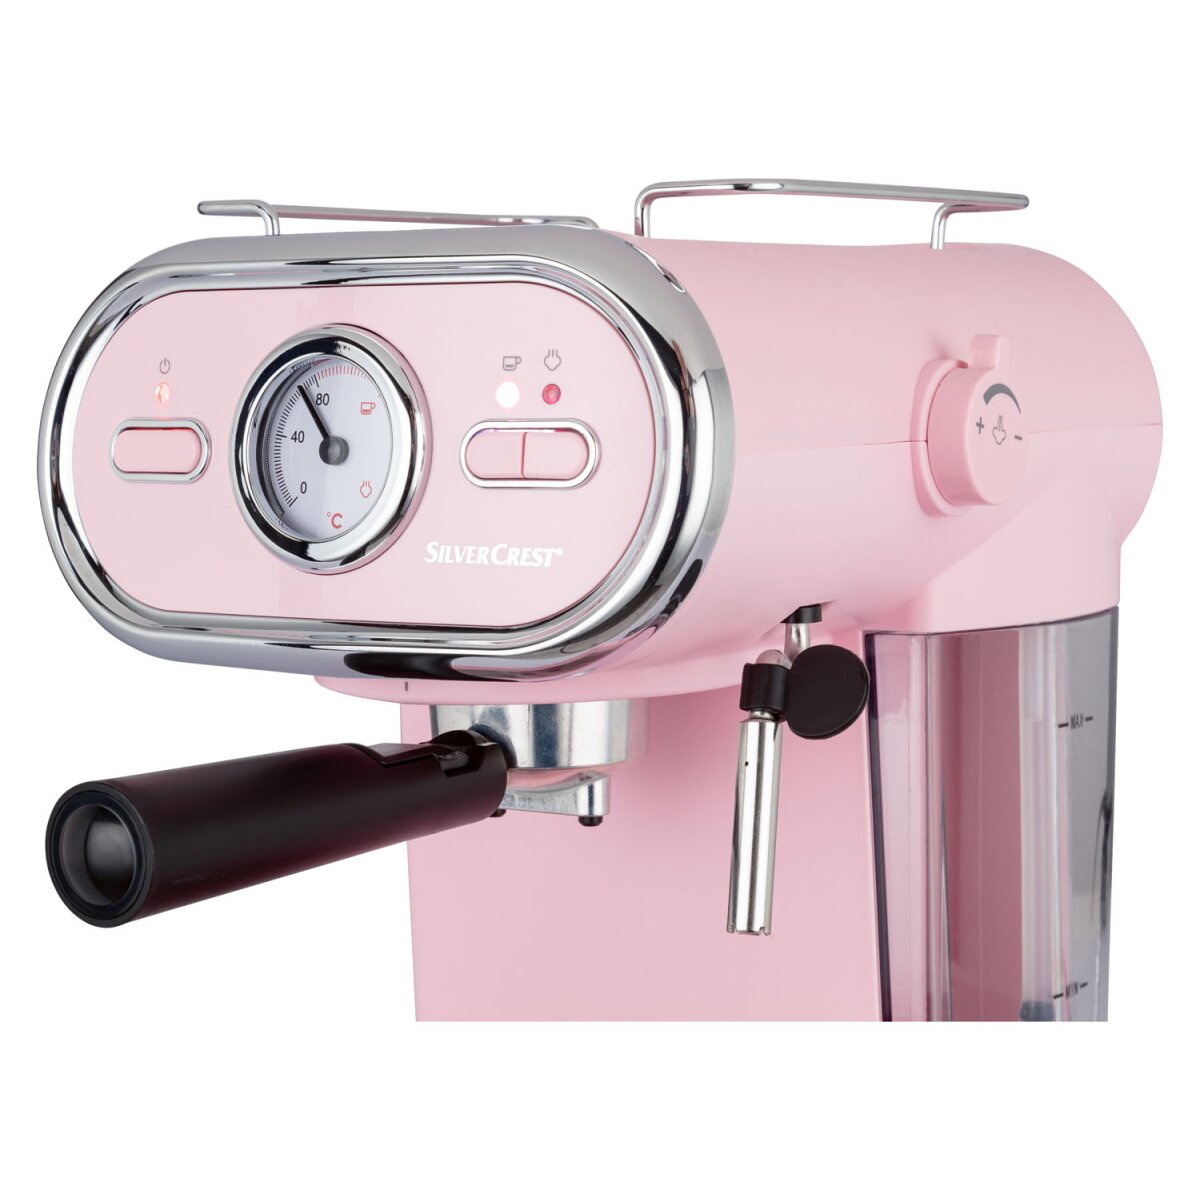 TOOLS - 41,99 € gut, Espressomaschine/Siebträger KITCHEN SEM Pastell 1100 D3 B-Ware rosa SILVERCREST®